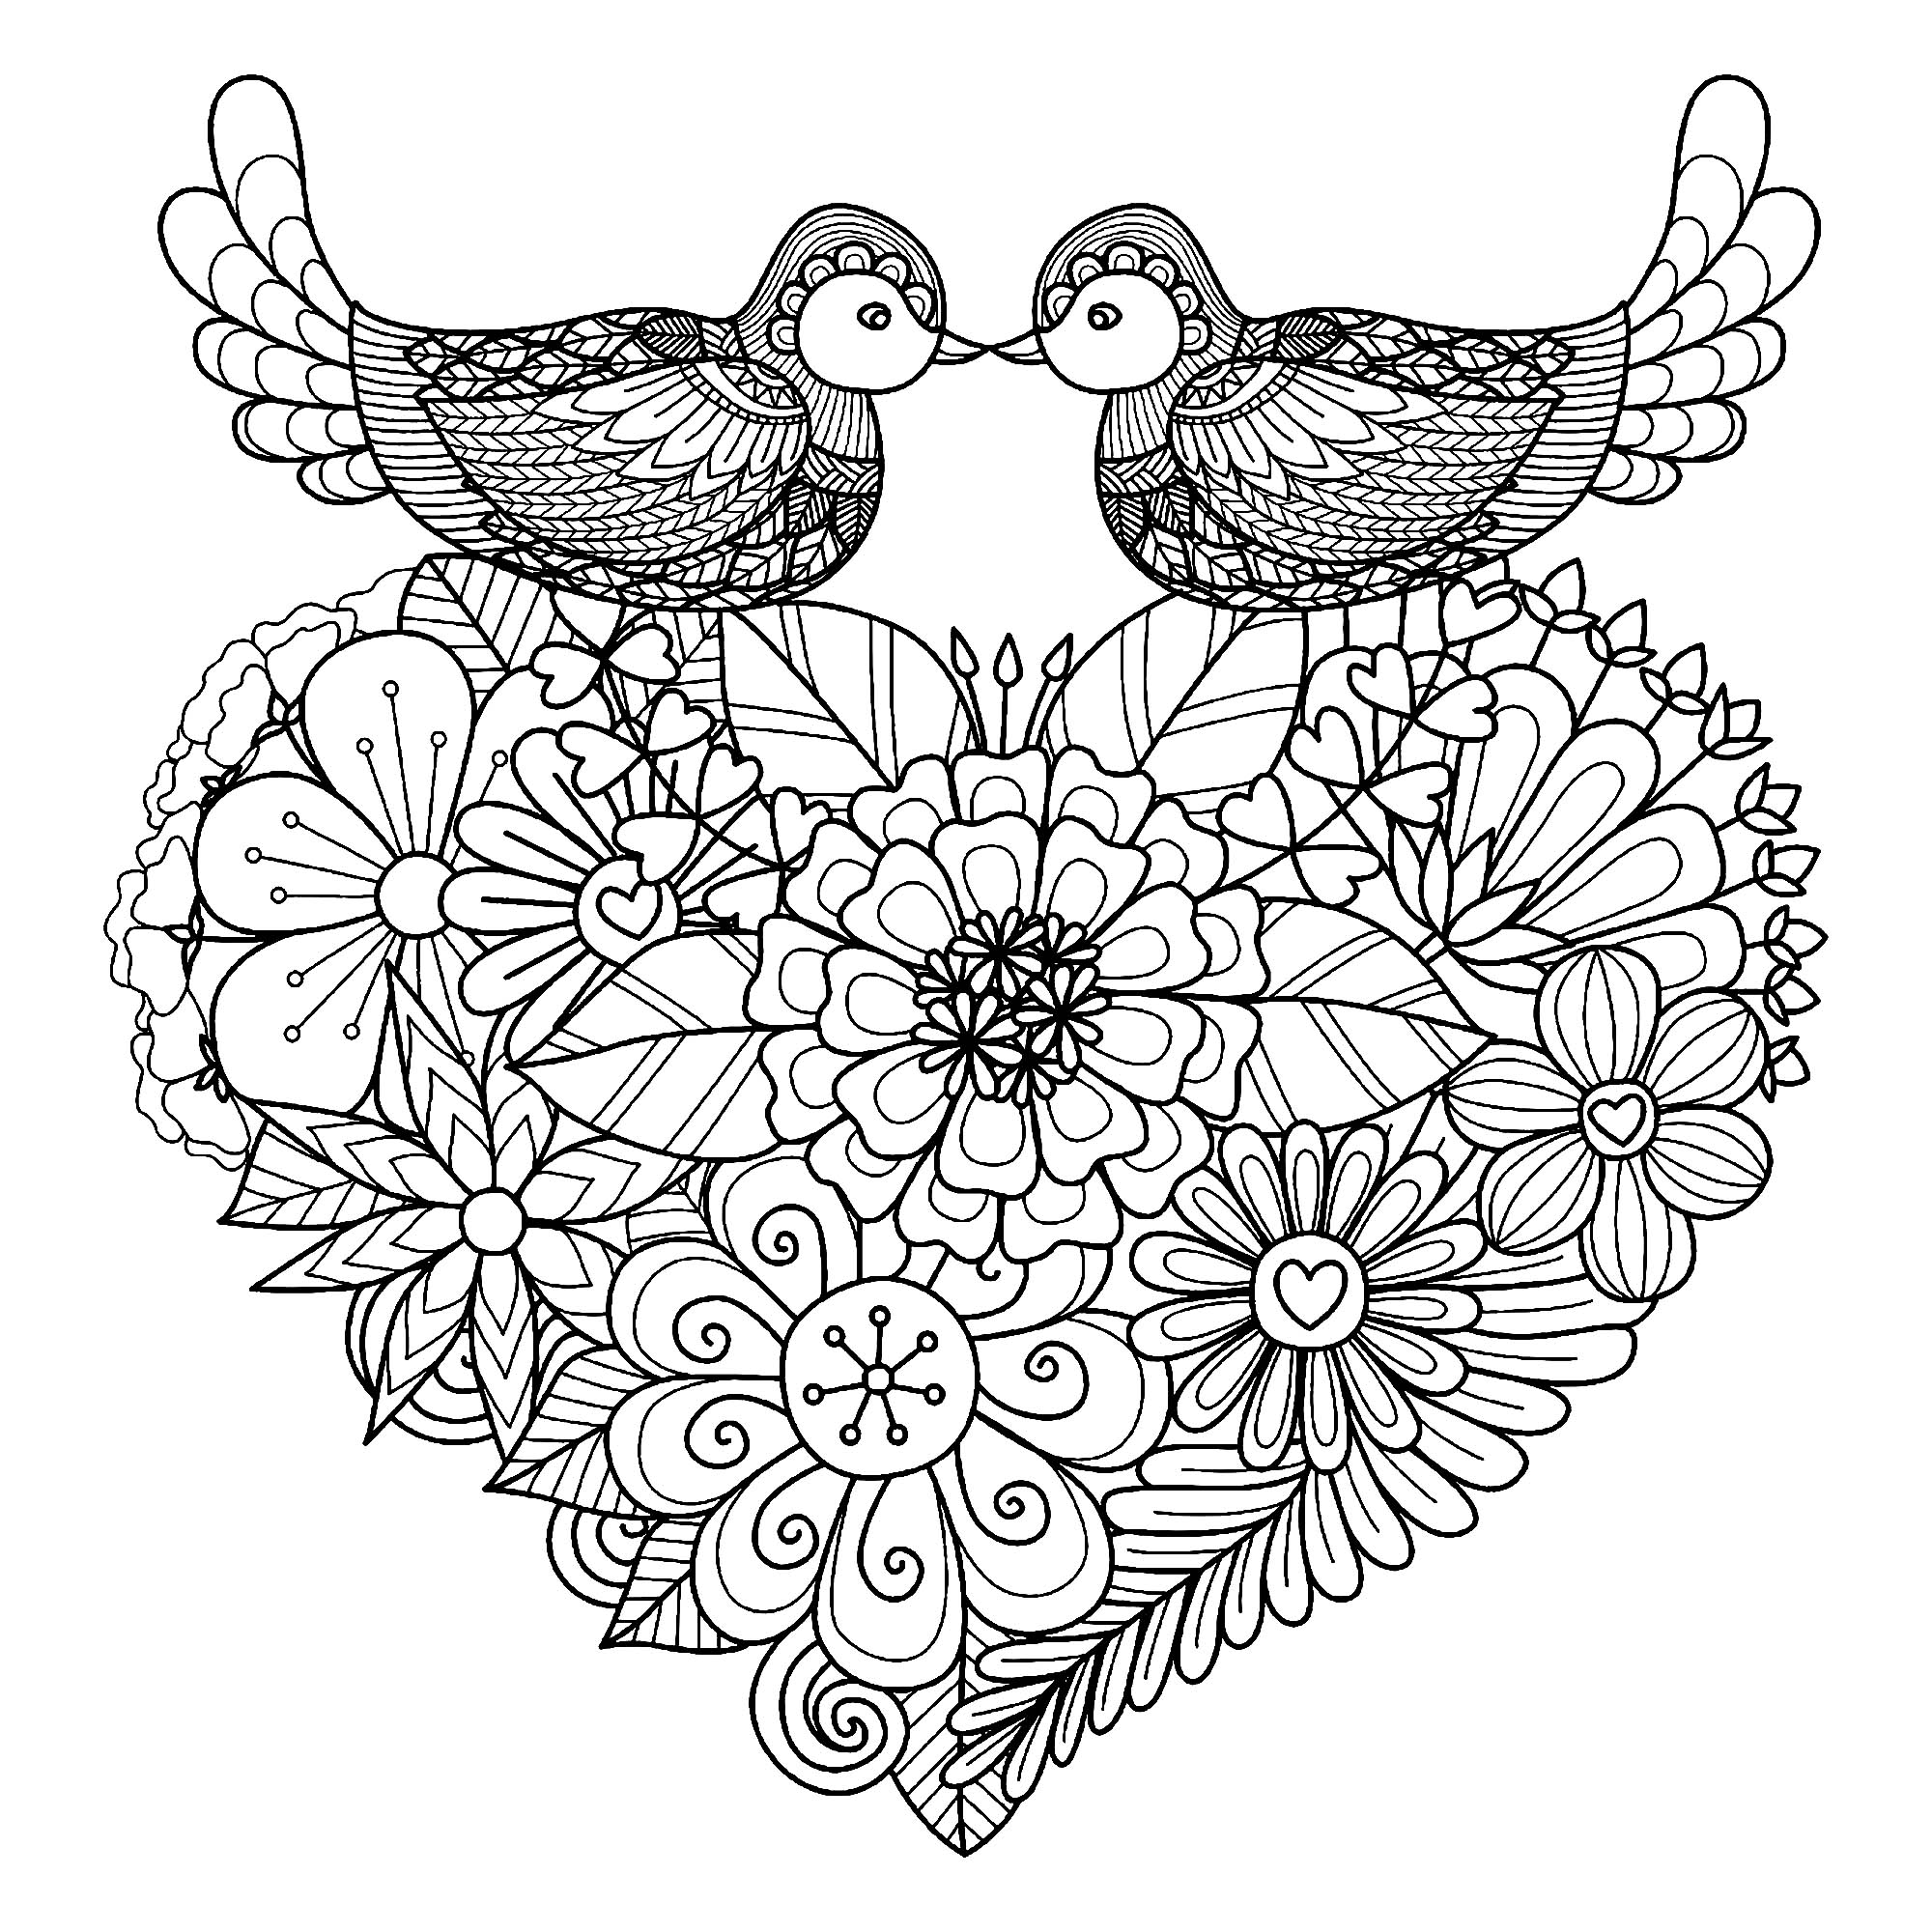 Pinte estes dois pássaros simétricos que repousam sobre um coração cheio de flores originais, Artista : Bimdeedee   Fonte : 123rf